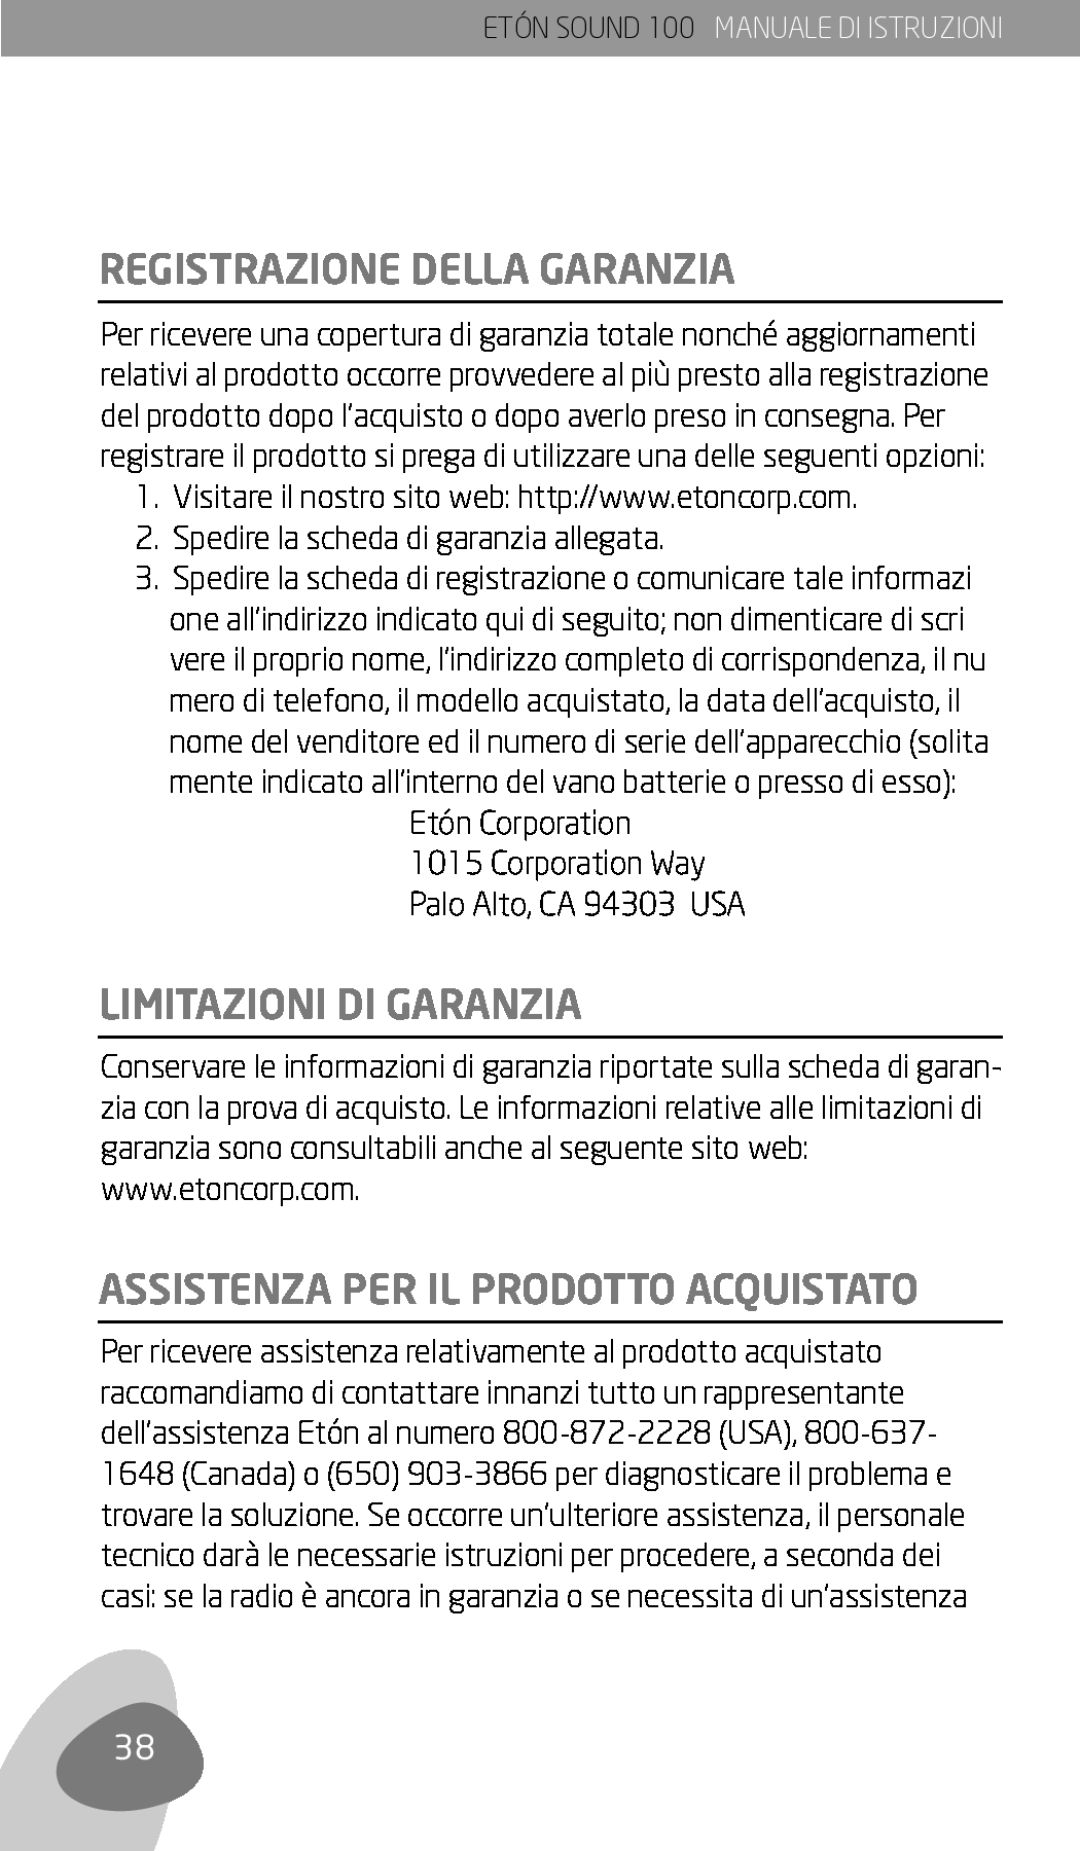 Eton Sound 100 owner manual Registrazione Della Garanzia, Limitazioni Di Garanzia, Assistenza Per Il Prodotto Acquistato 